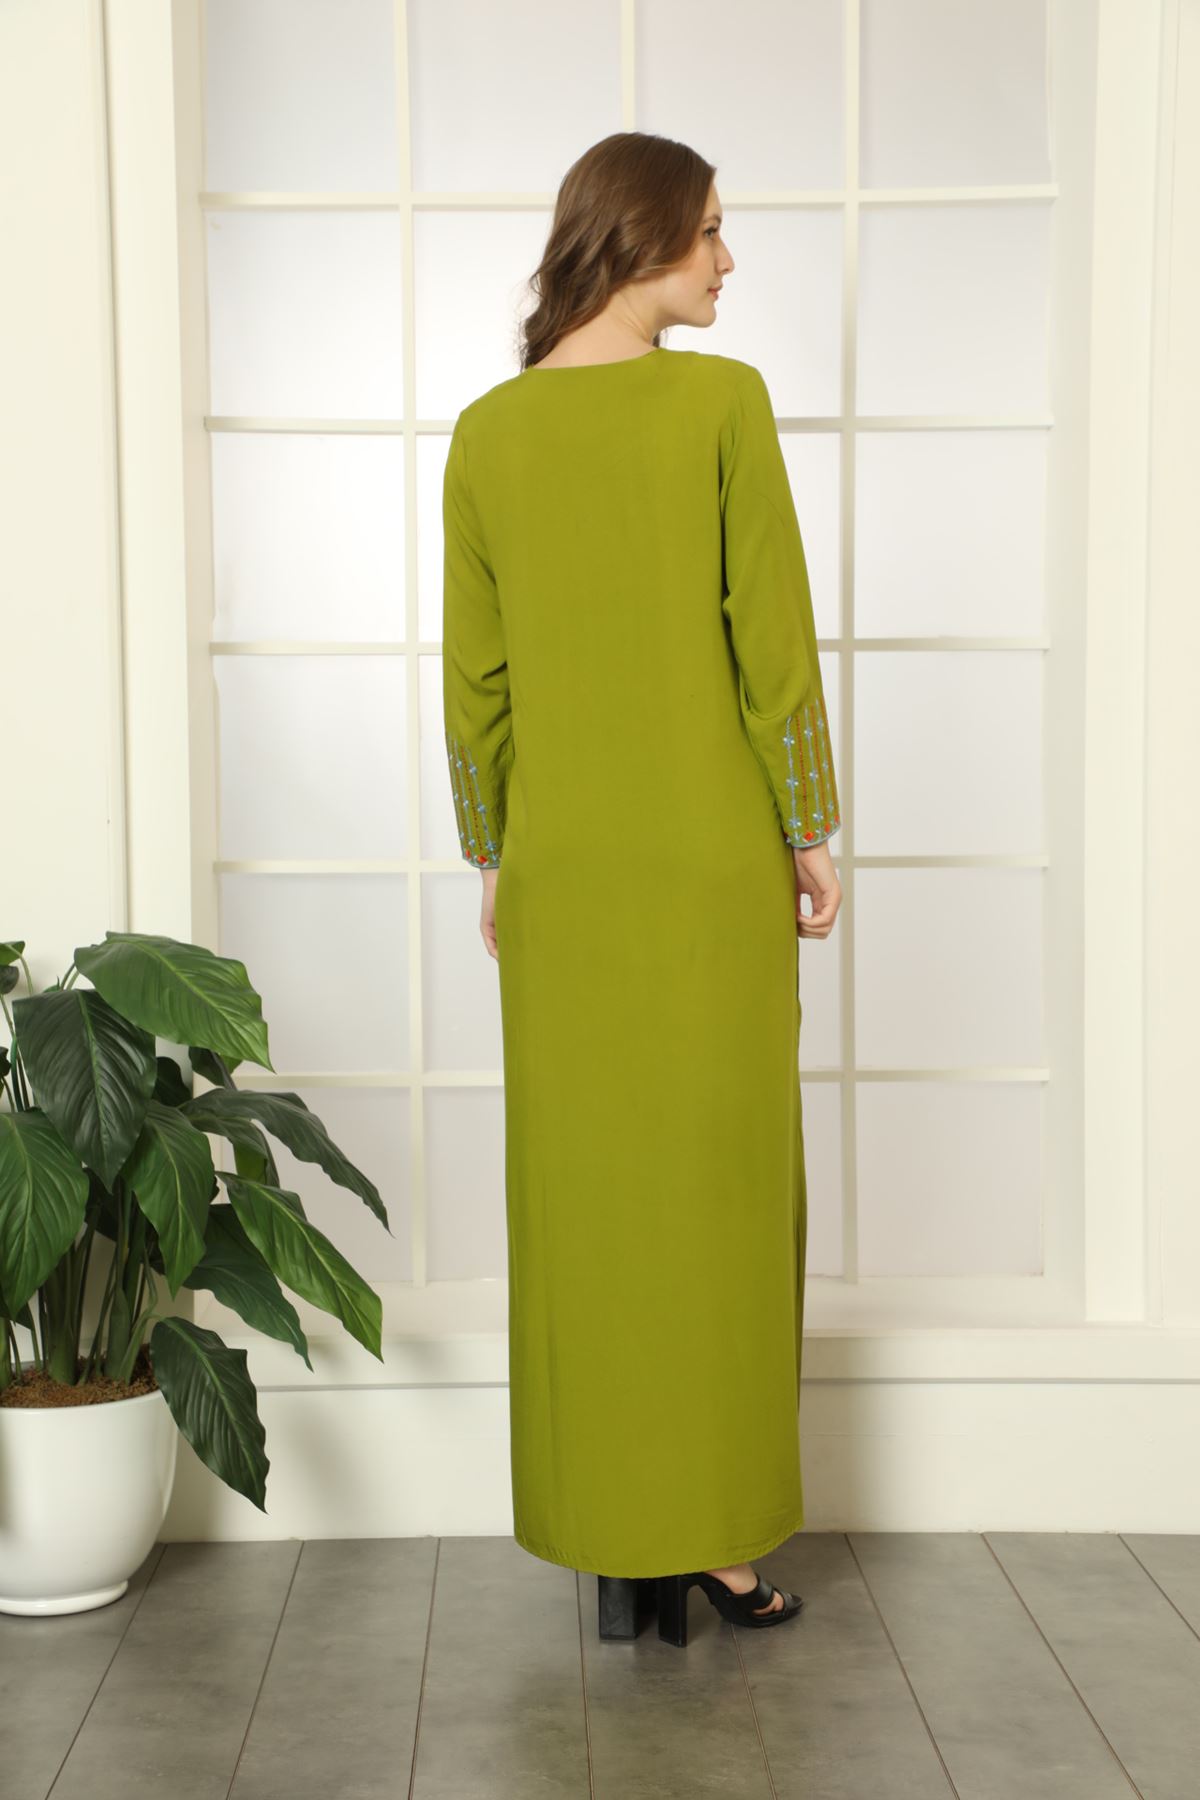 Laila Kadın Fıstık Yeşil Nakış İşlemeli Düz Maxi Viskon Elbise